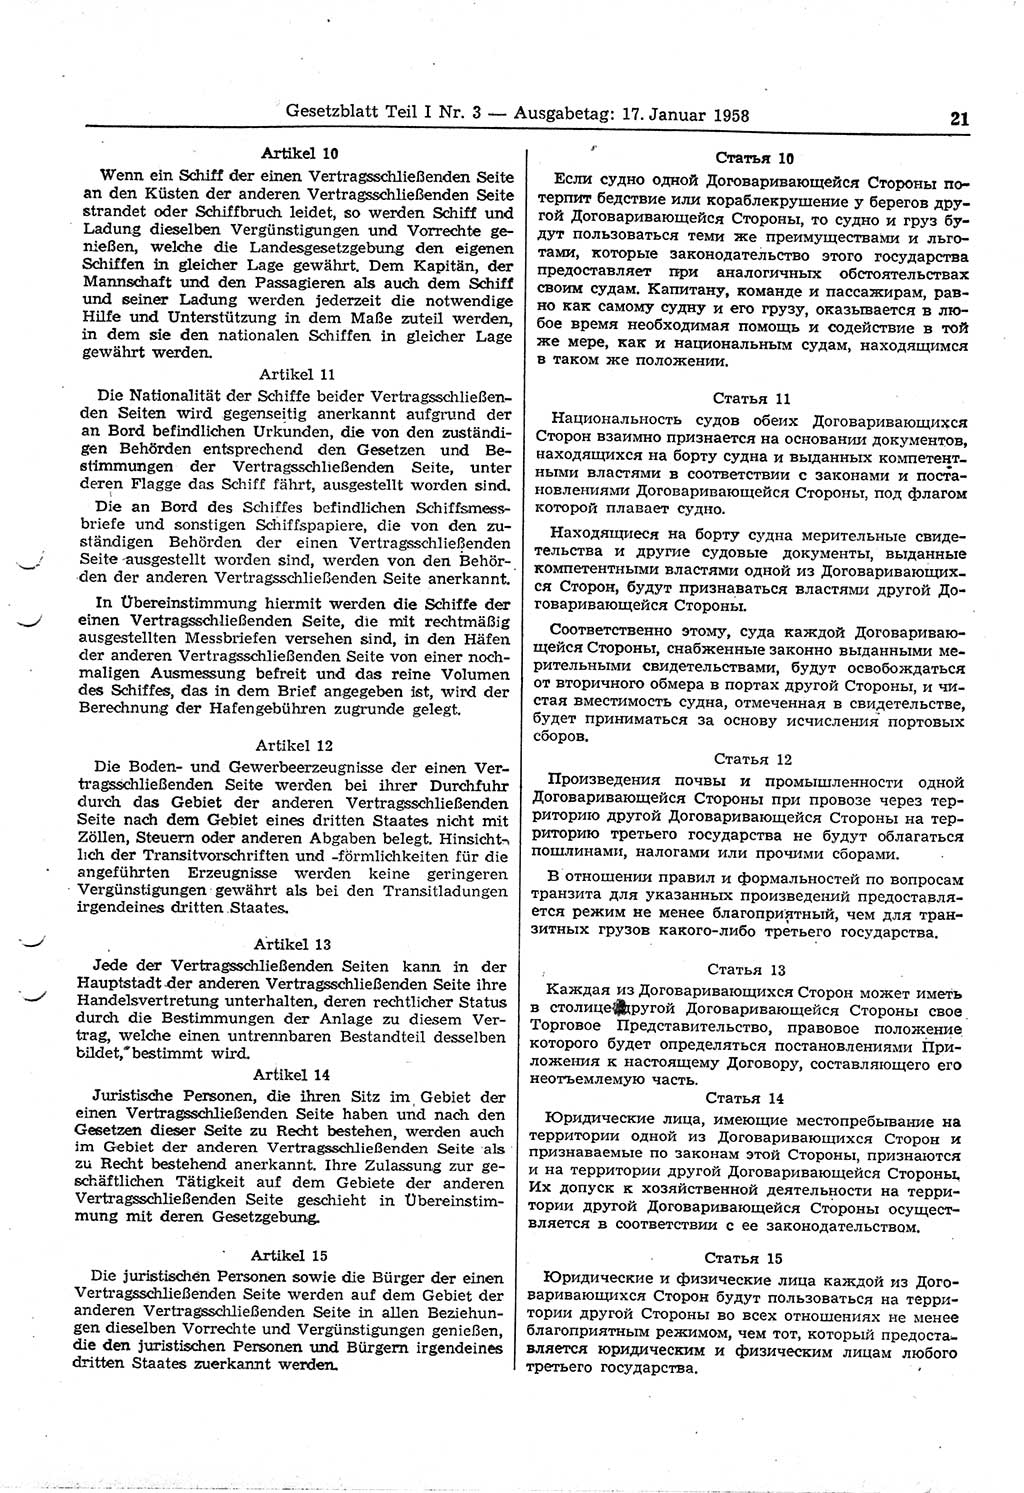 Gesetzblatt (GBl.) der Deutschen Demokratischen Republik (DDR) Teil Ⅰ 1958, Seite 21 (GBl. DDR Ⅰ 1958, S. 21)